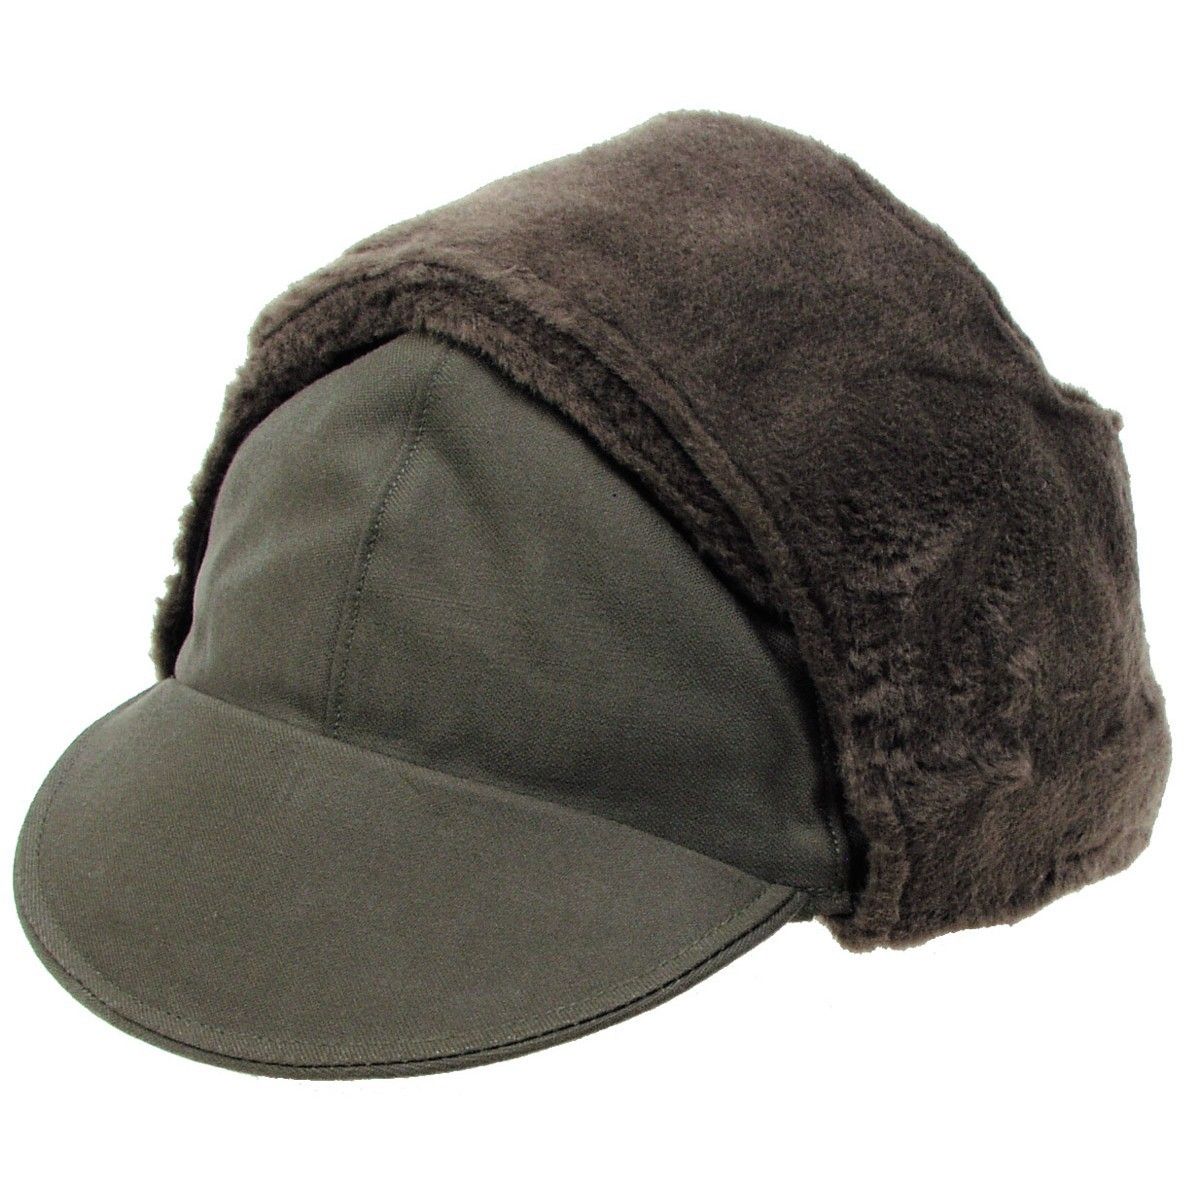 niemiecka czapka zimowa wojskowa - oliwkowa używana 62